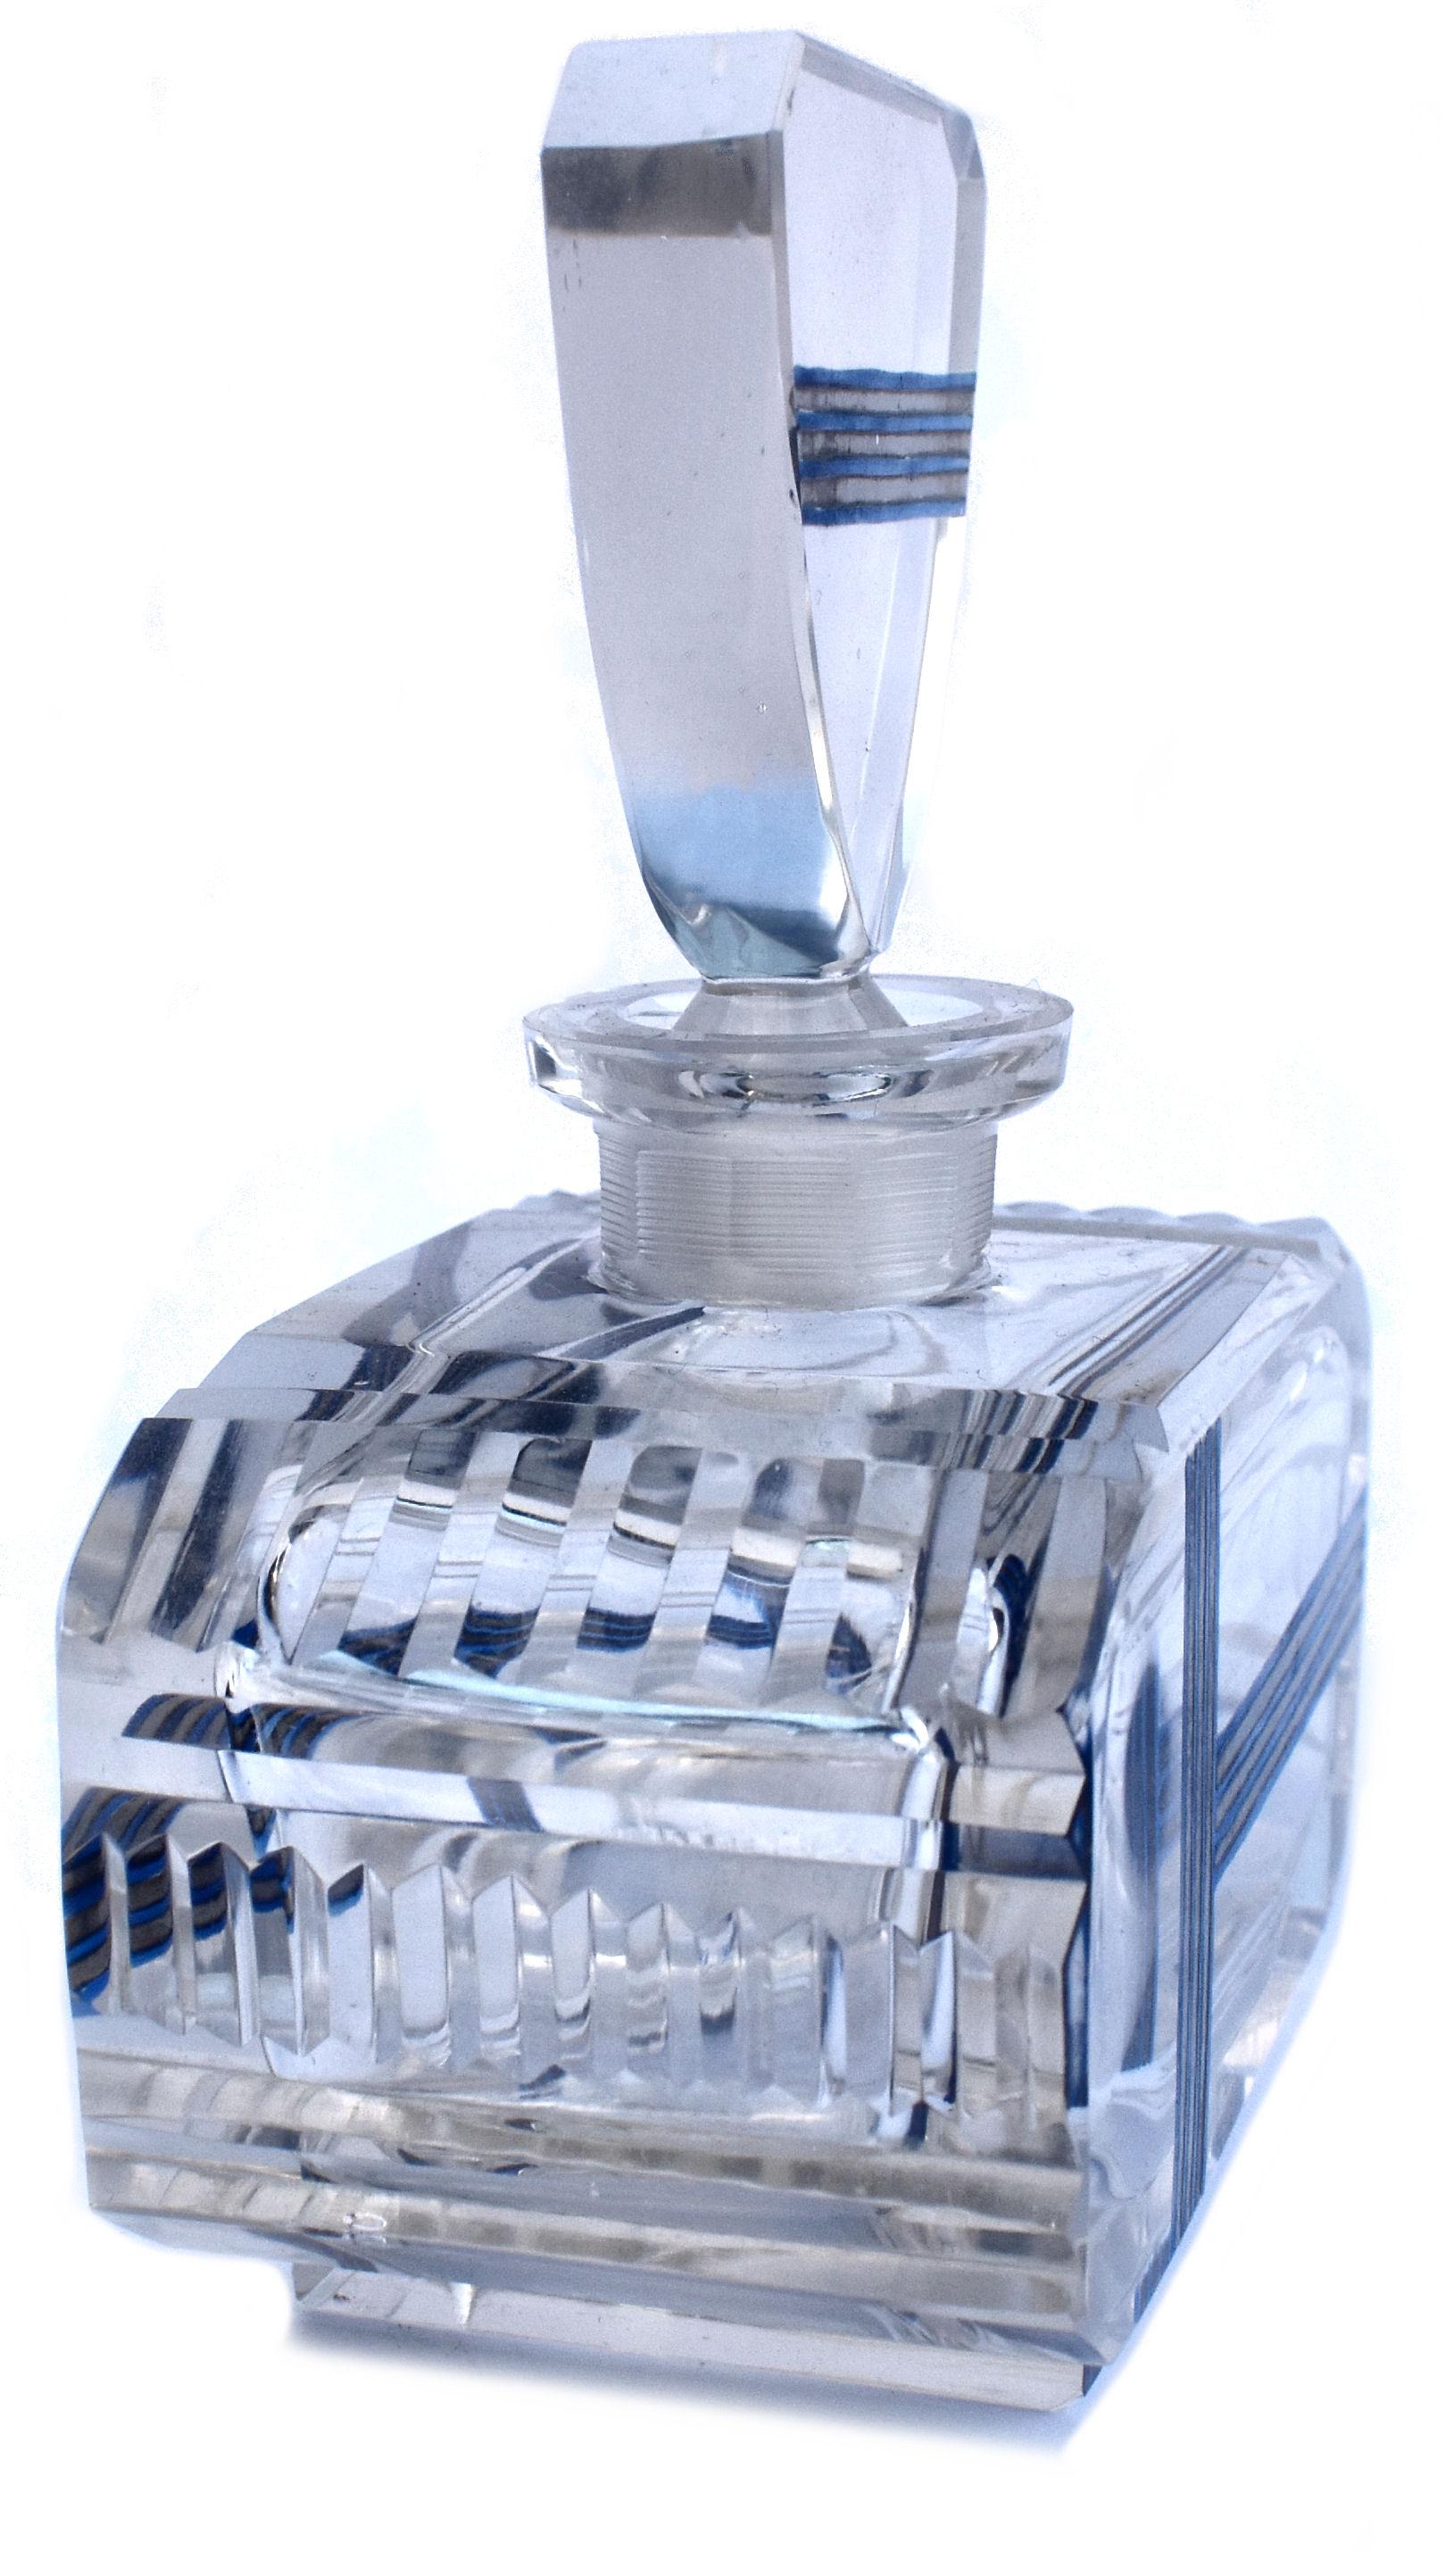 Grand flacon de parfum en verre taillé Art Déco, datant des années 1930 et provenant de France. En verre bleu vif avec un motif géométrique émaillé argenté. Bouchon en verre taillé. Juste un petit résidu de parfum à l'intérieur de la base. Dans